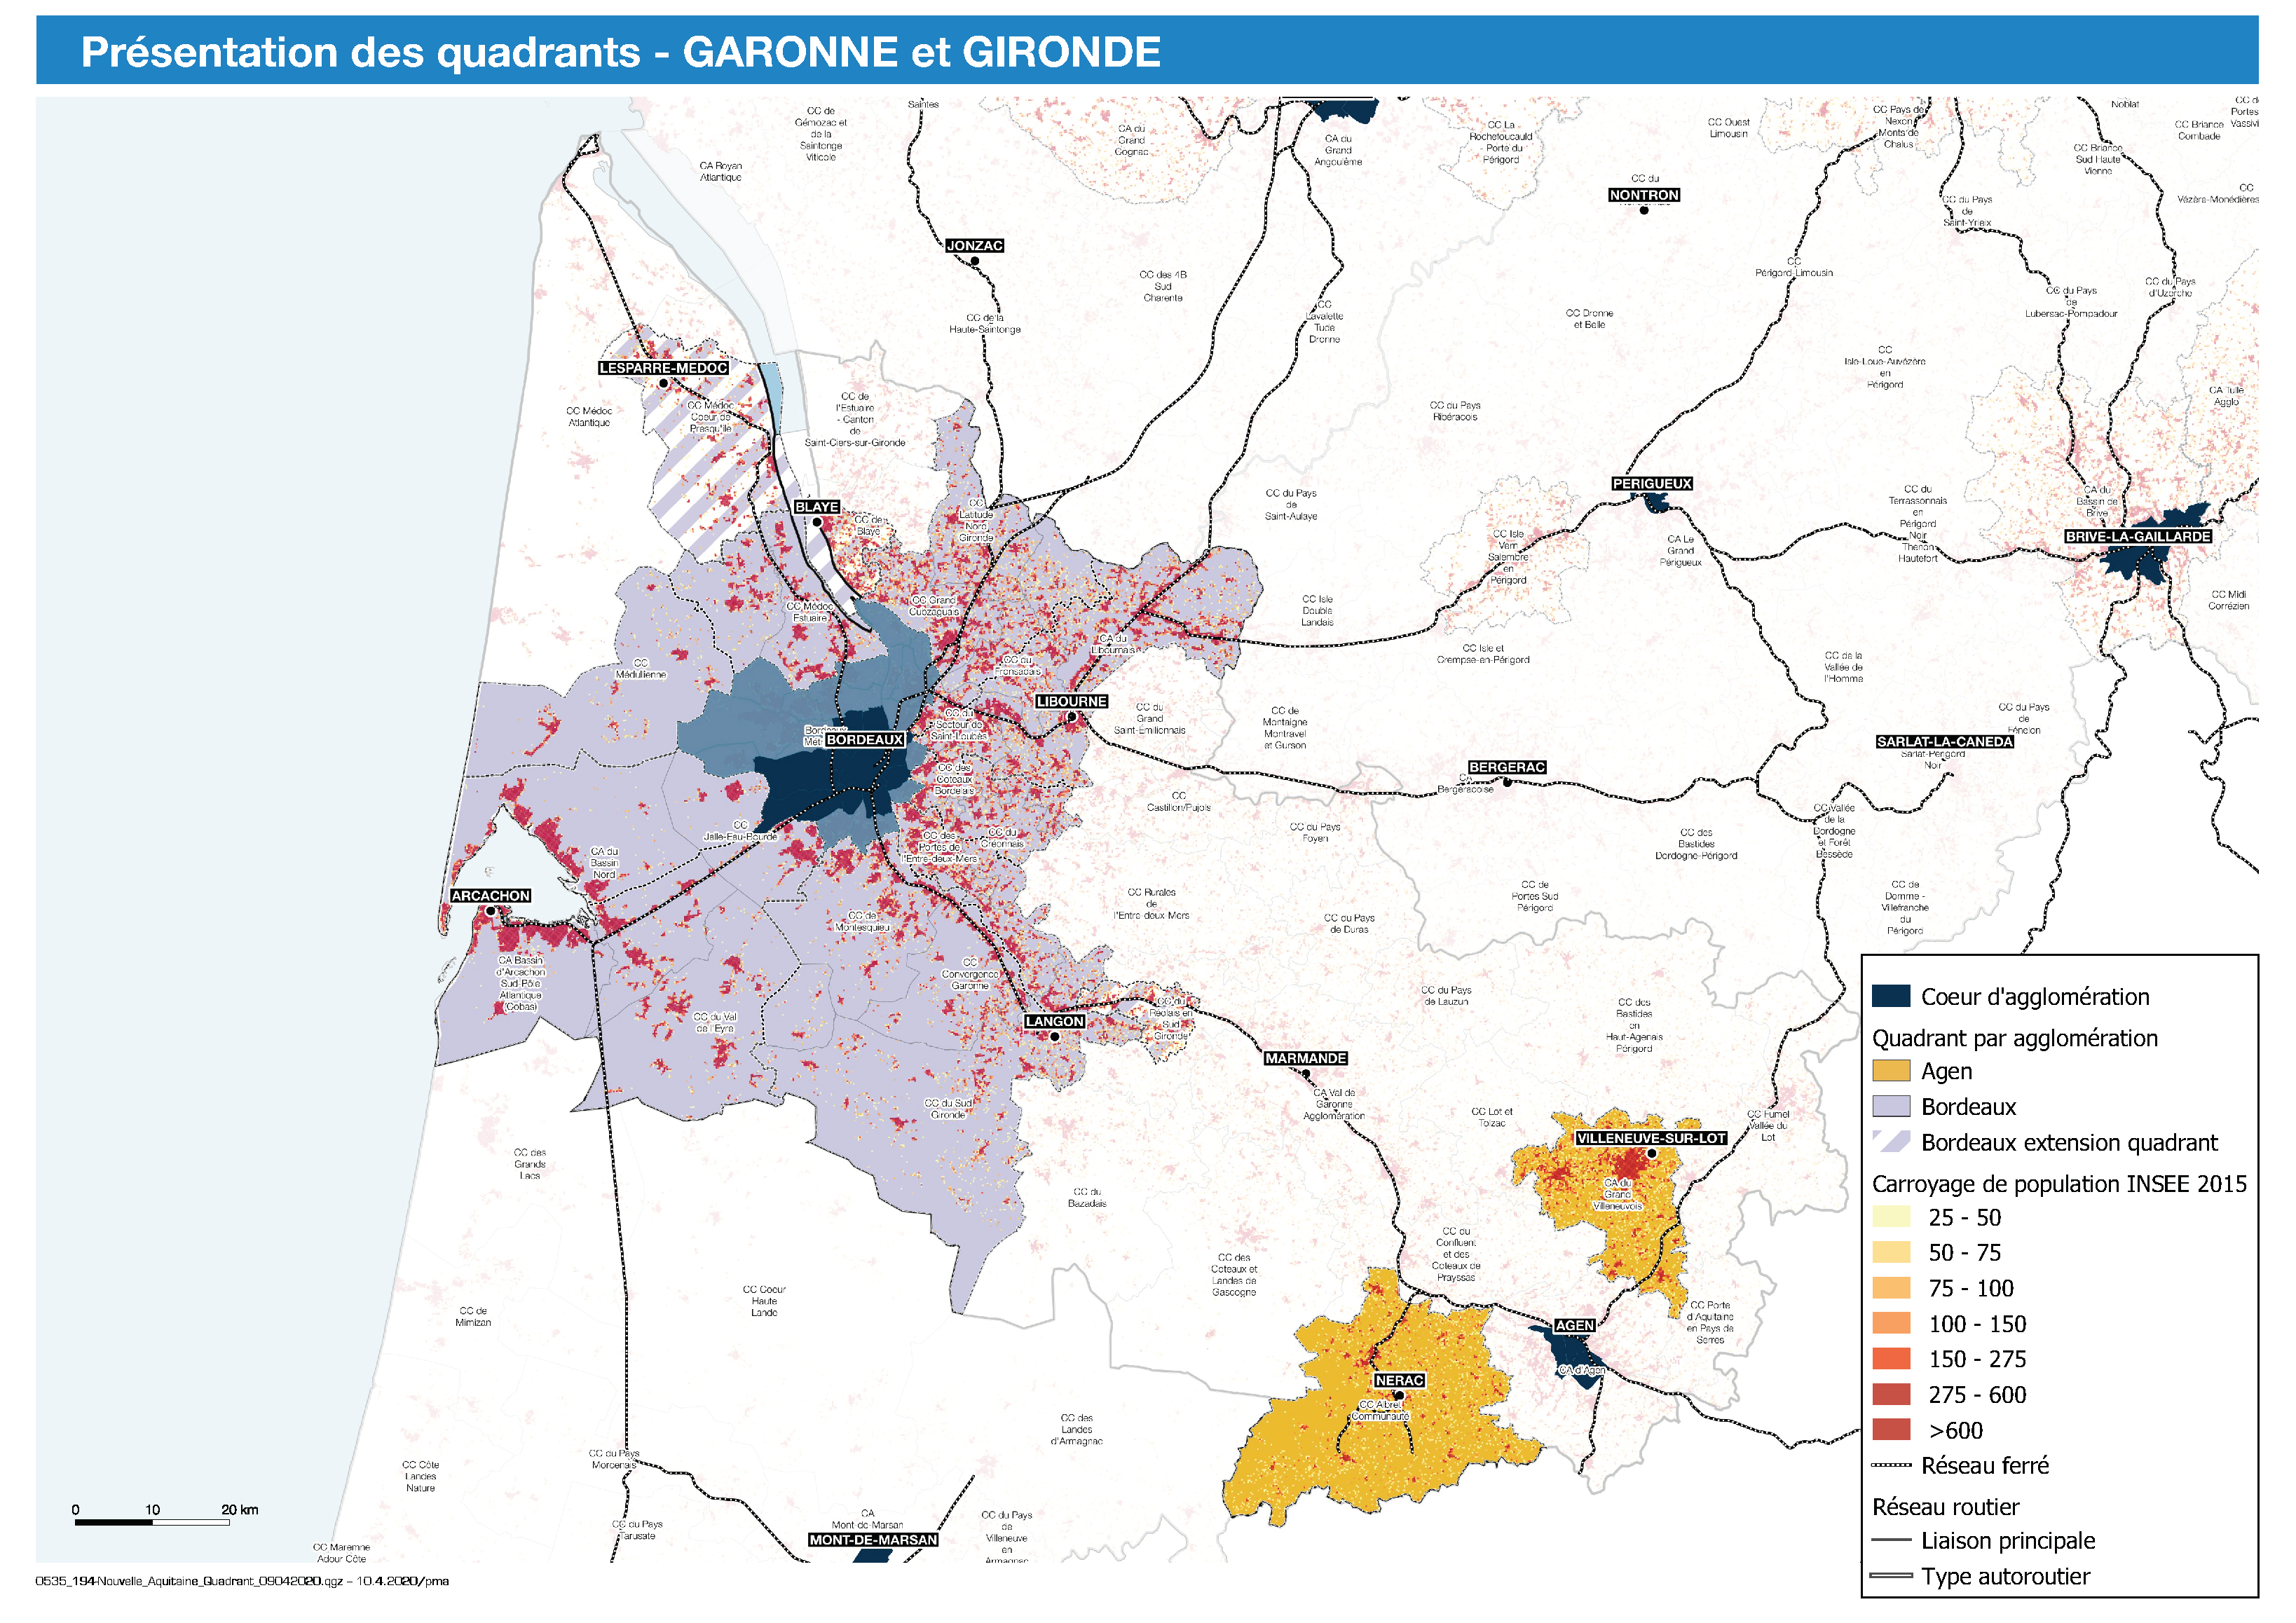 Présentation des quadrants d’études et tâche urbaine du bassin Gironde et Garonne